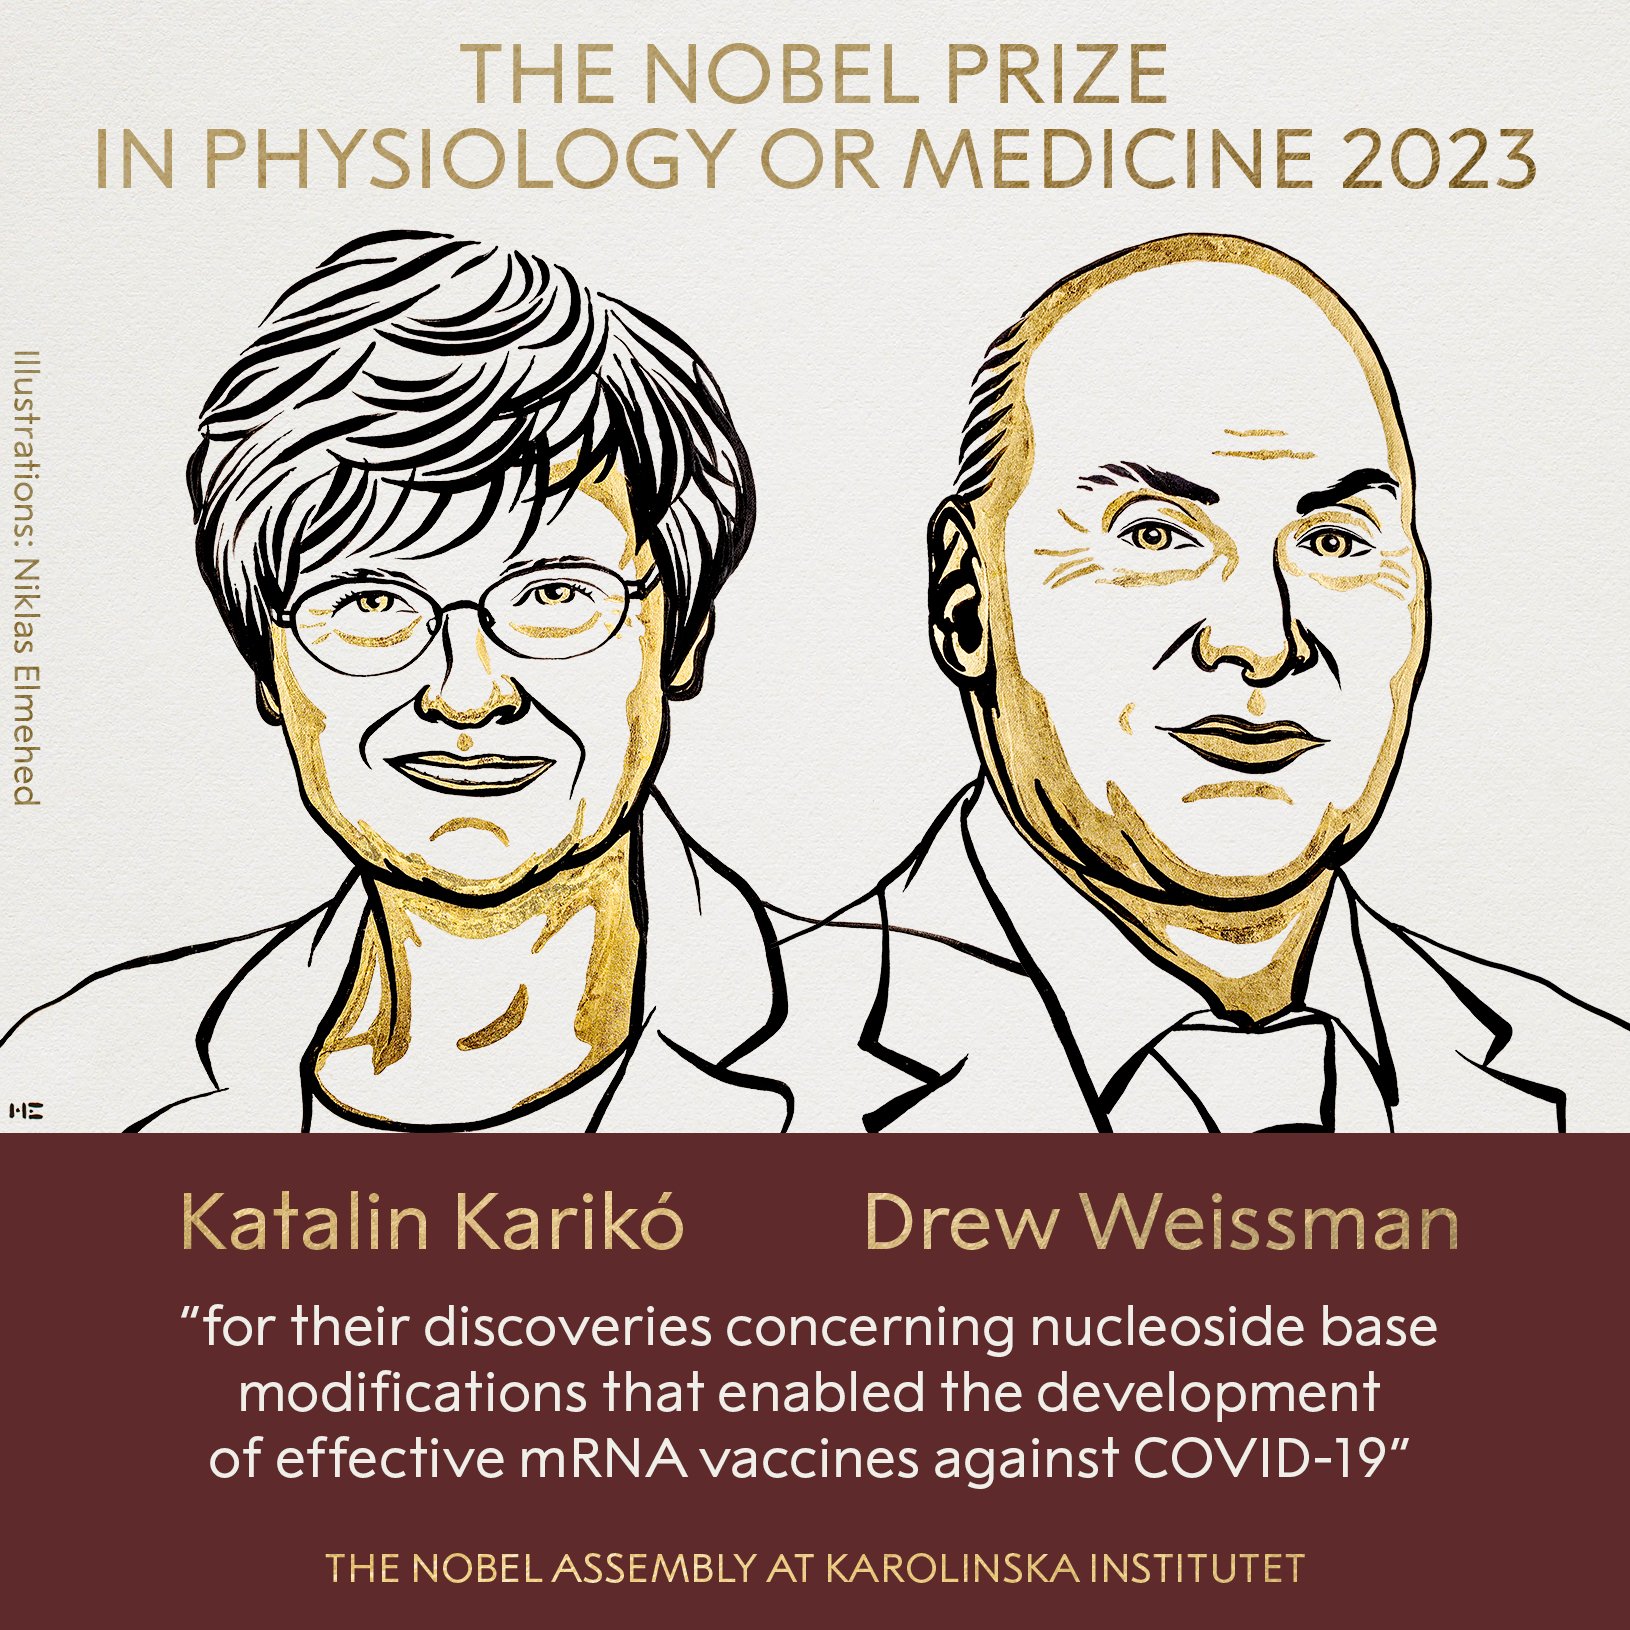 عالمان طورا لقاحا مضادا لـ "كورونا" يفوزان بجائزة نوبل للطب